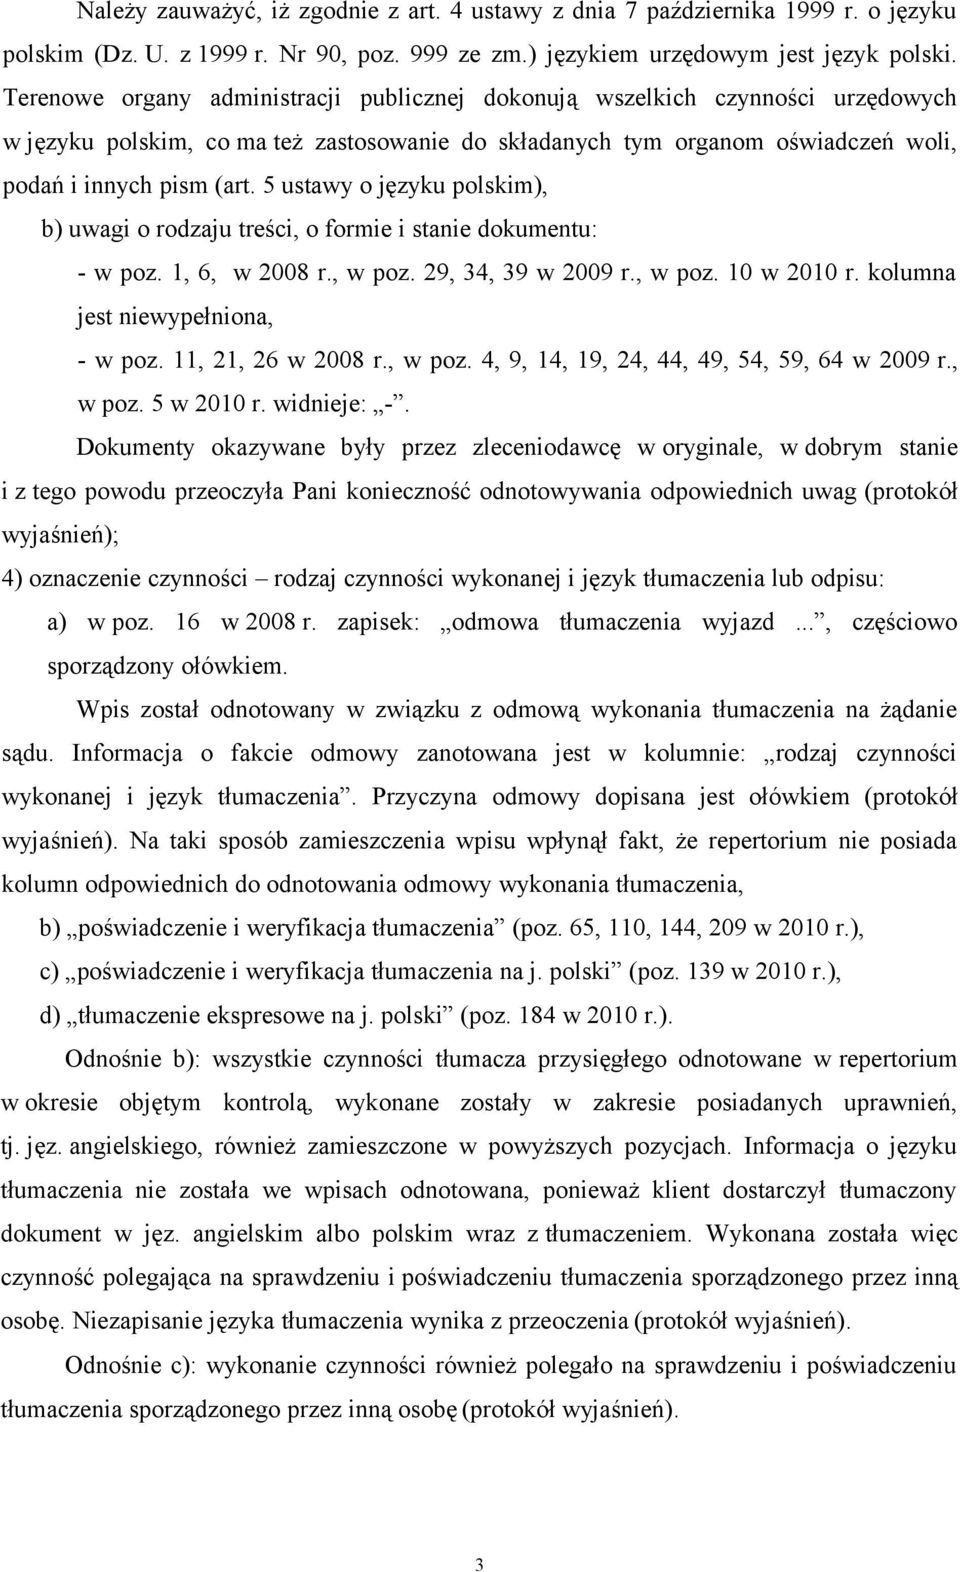 5 ustawy o języku polskim), b) uwagi o rodzaju treści, o formie i stanie dokumentu: - w poz. 1, 6, w 2008 r., w poz. 29, 34, 39 w 2009 r., w poz. 10 w 2010 r. kolumna jest niewypełniona, - w poz.